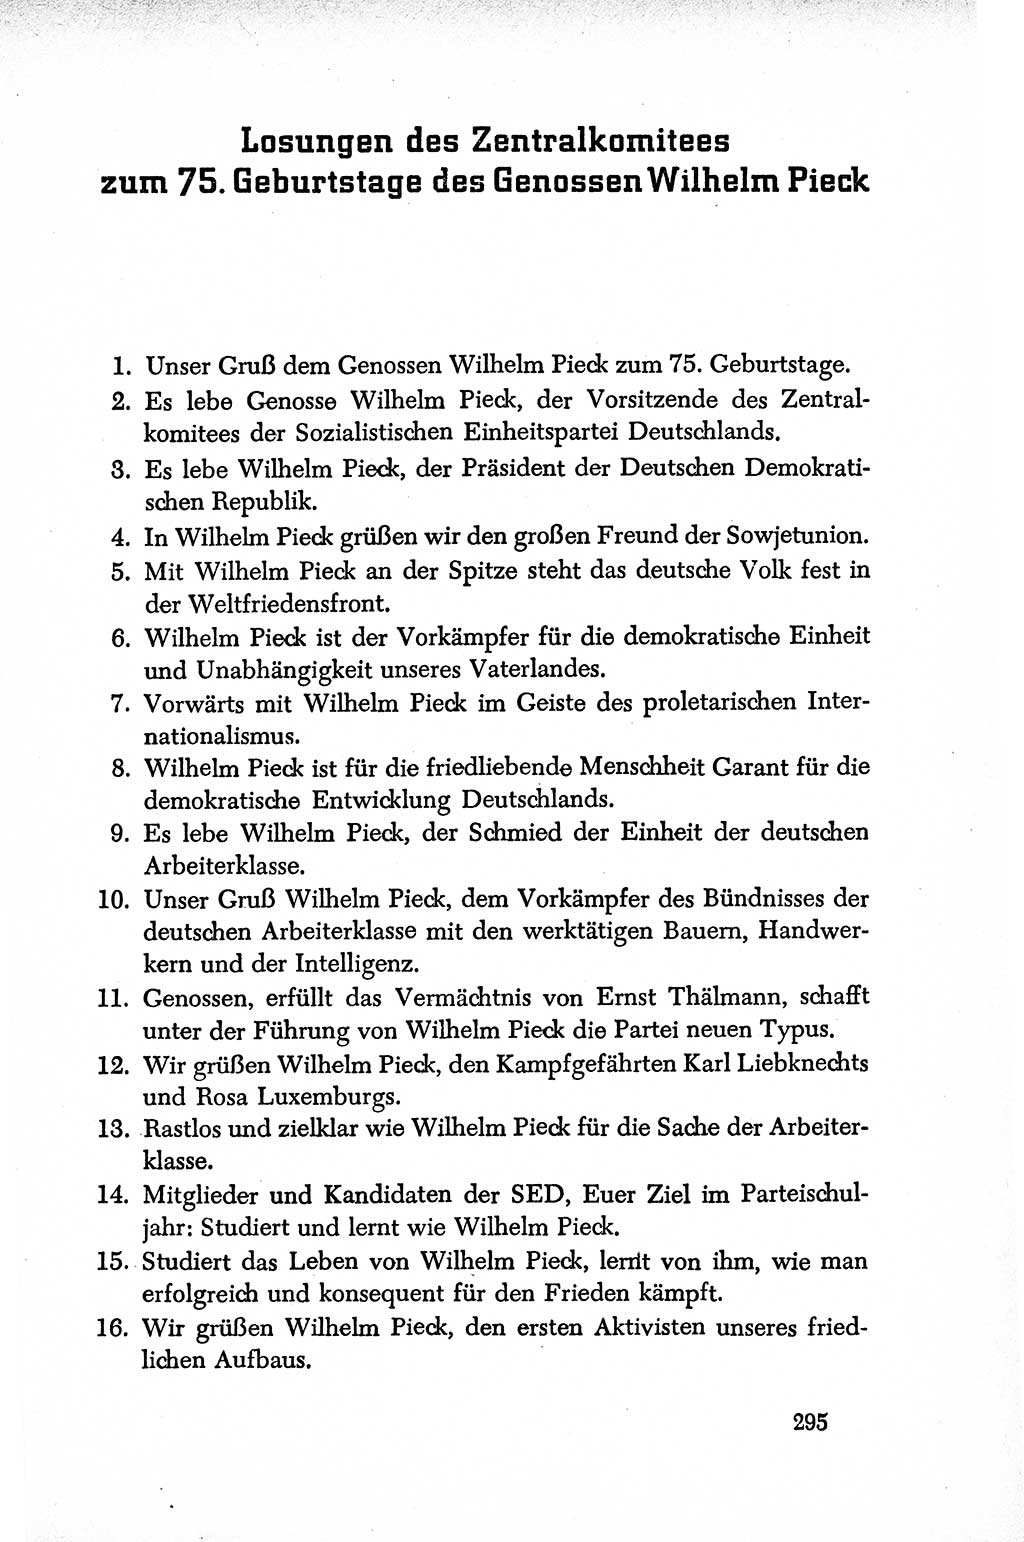 Dokumente der Sozialistischen Einheitspartei Deutschlands (SED) [Deutsche Demokratische Republik (DDR)] 1950-1952, Seite 295 (Dok. SED DDR 1950-1952, S. 295)